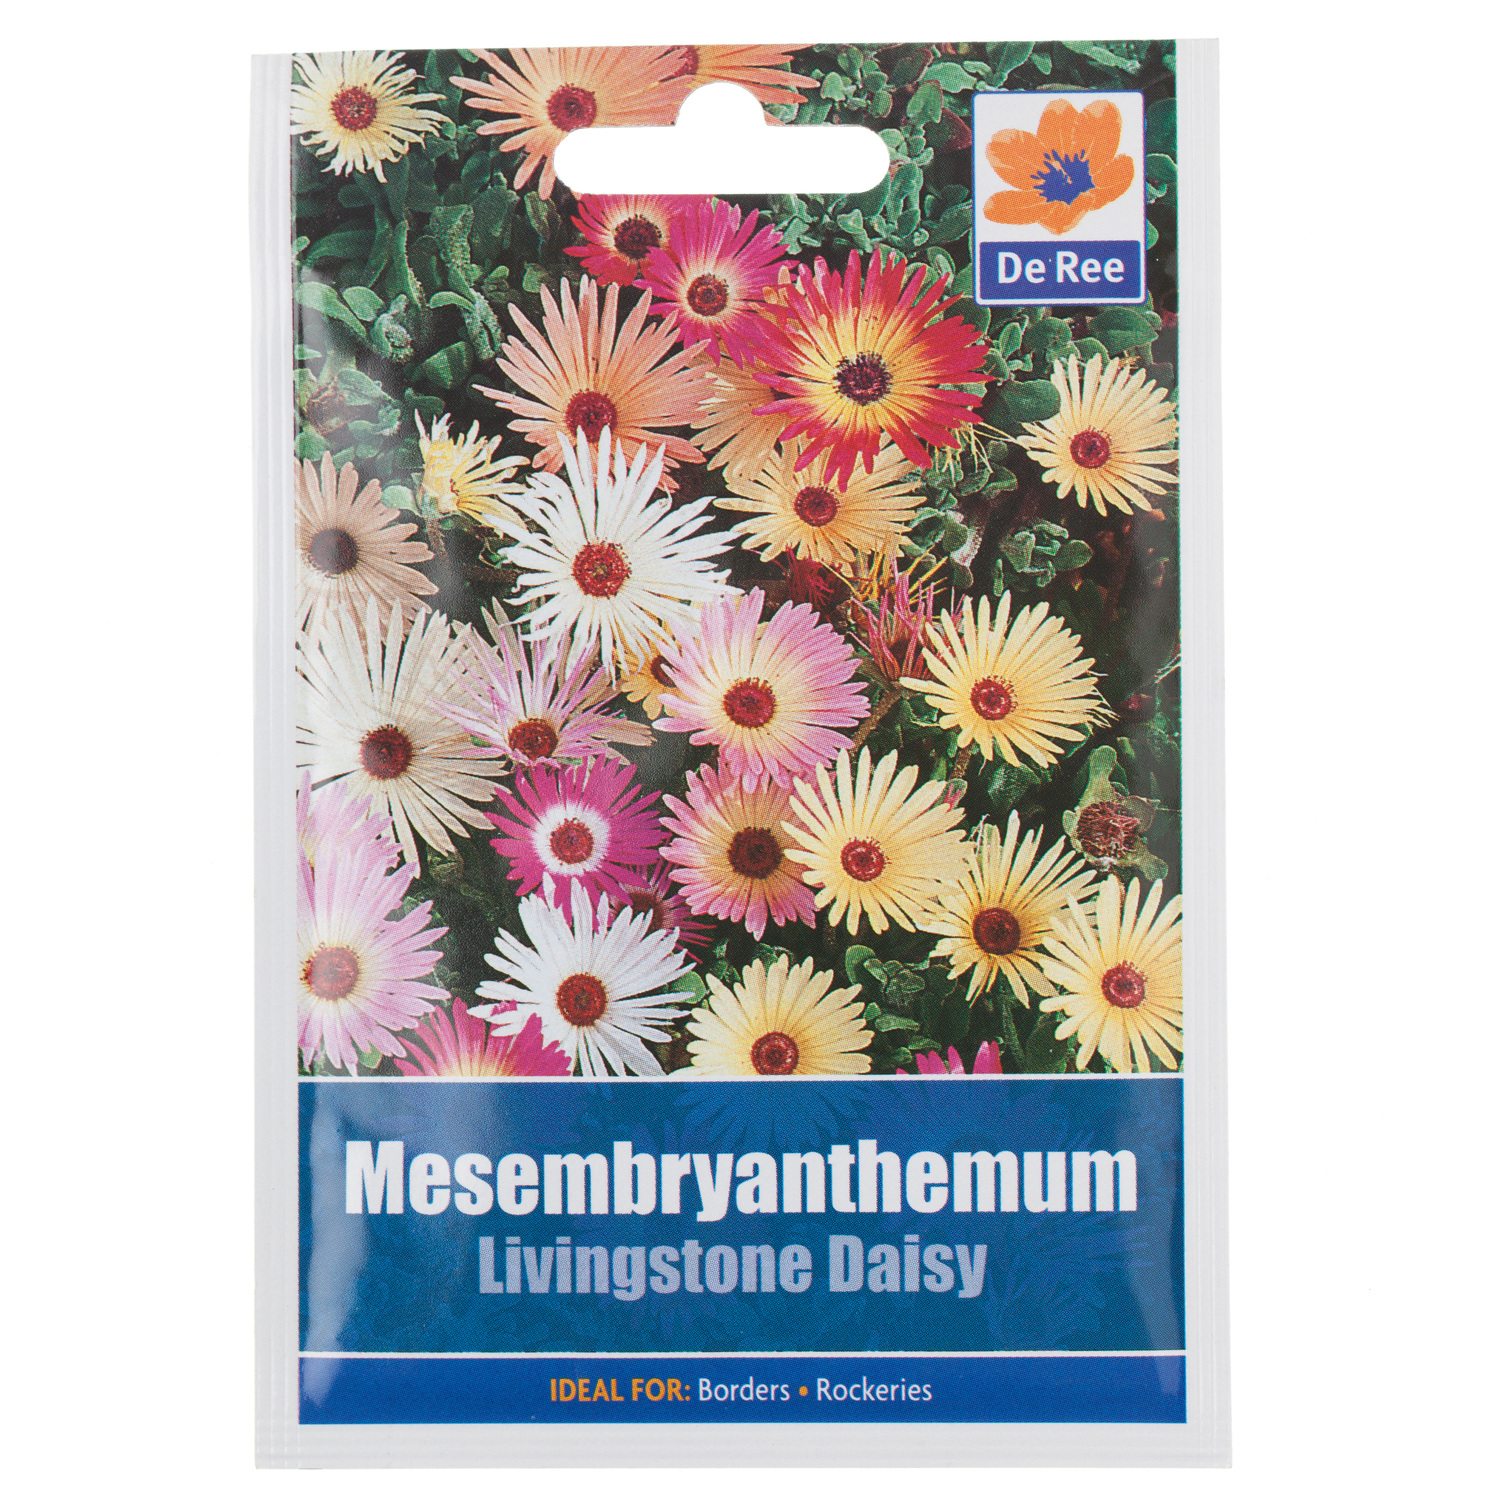 Mesembryanthemum Seed Packet Image